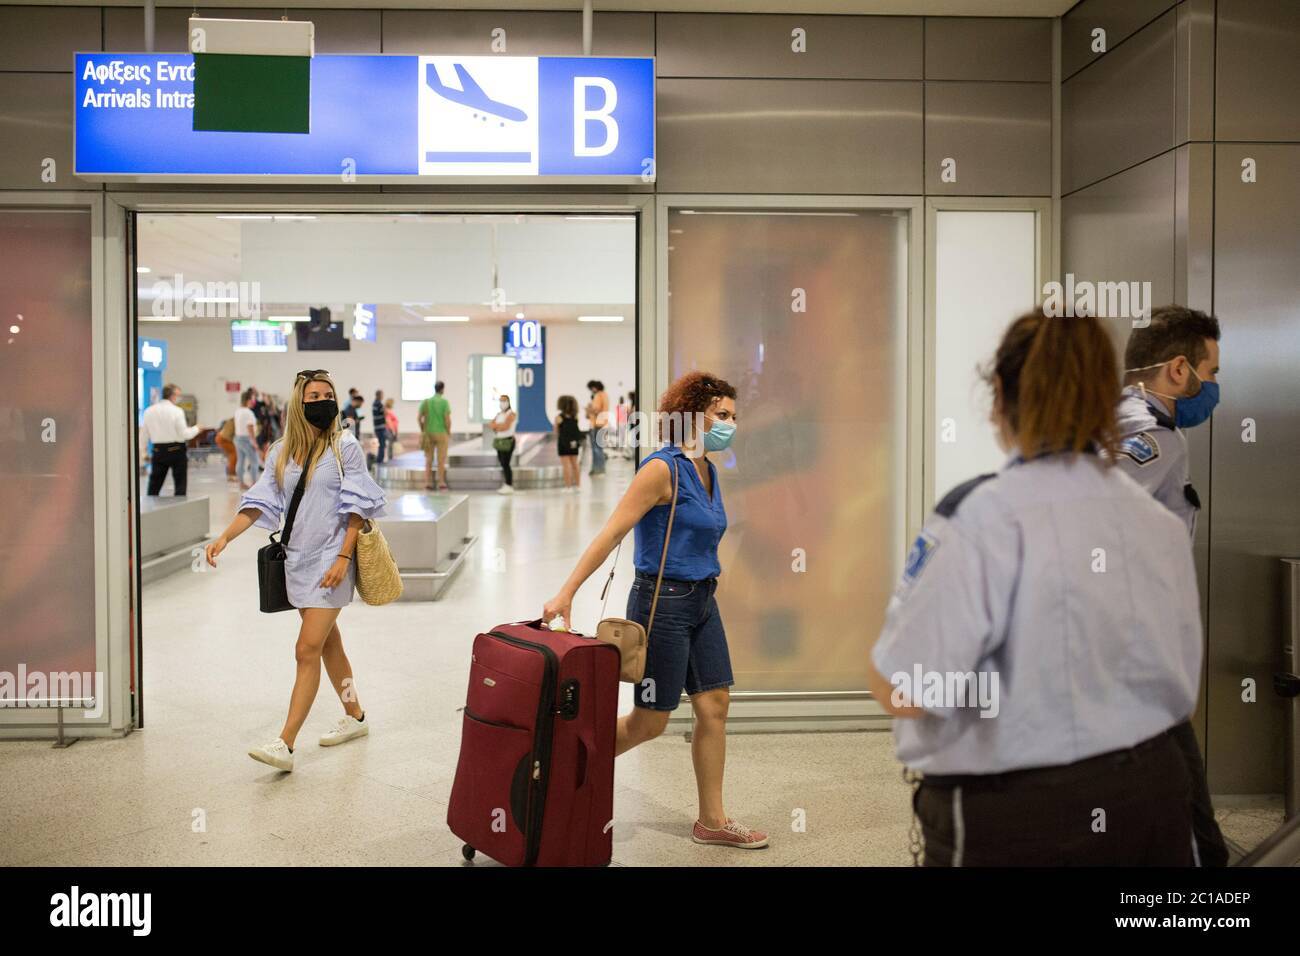 Аэропорт афины: официальный сайт, как добраться, где остановиться | live to travel